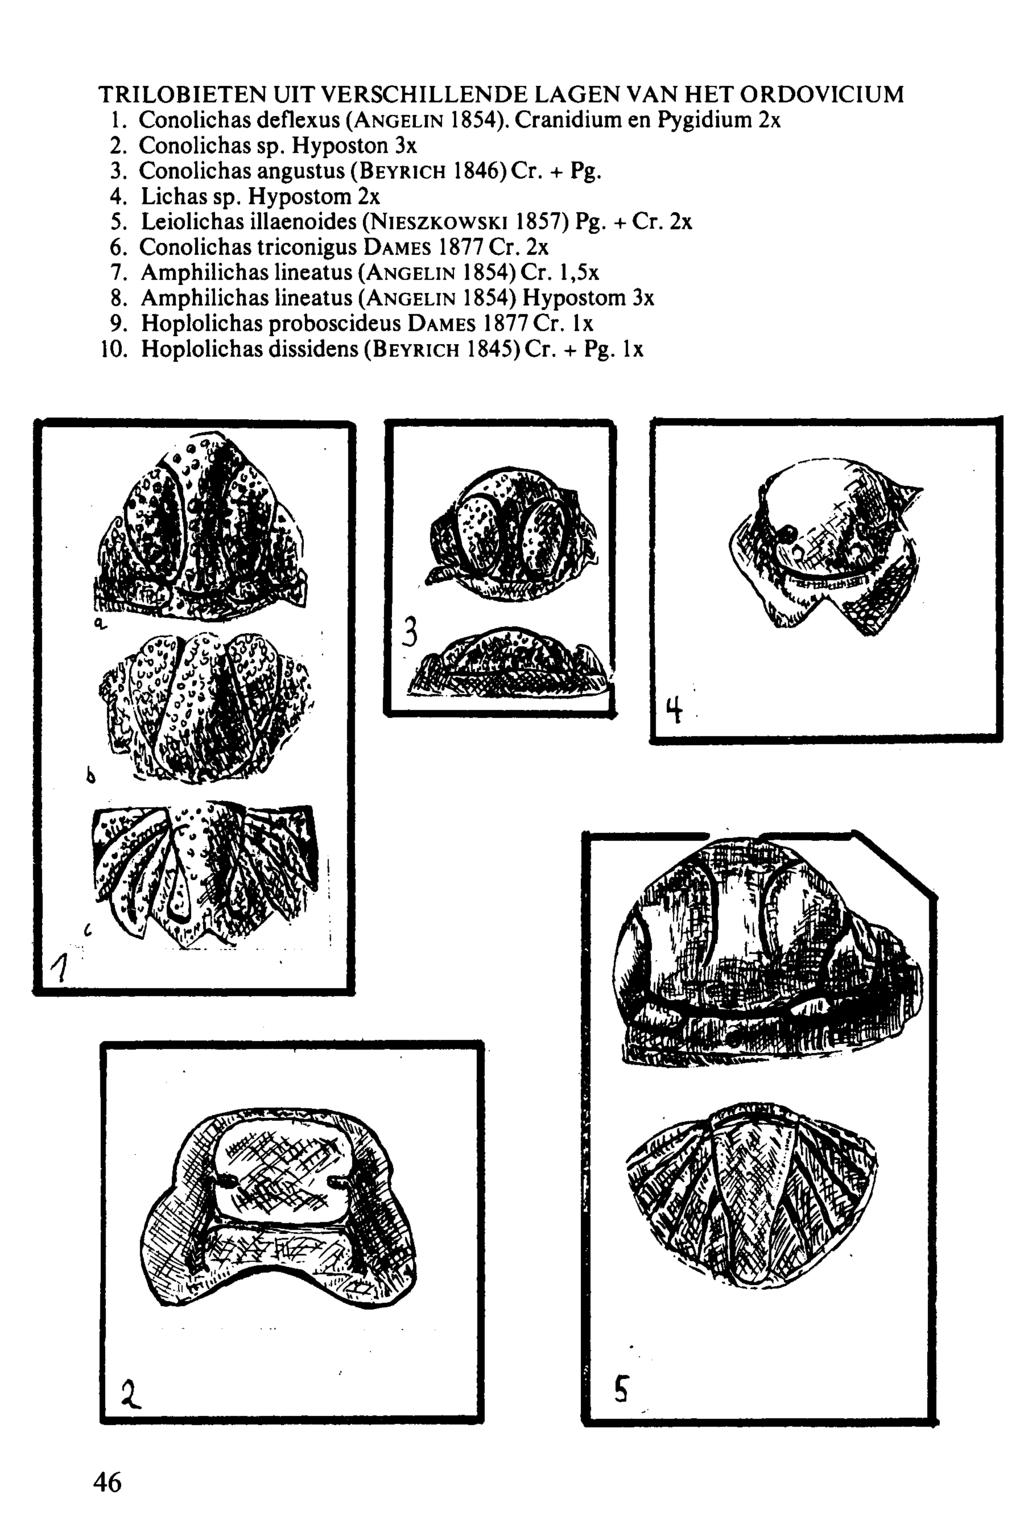 TRILOBIETEN UIT VERSCHILLENDE LAGEN VAN HET ORDOVICIUM 1. Conolichas deflexus (ANGELIN 1854). Cranidium en Pygidium 2x 2. Conolichas sp. Hyposton 3x 3. Conolichas angustus (BEYRICH 1846) Cr. + Pg. 4.